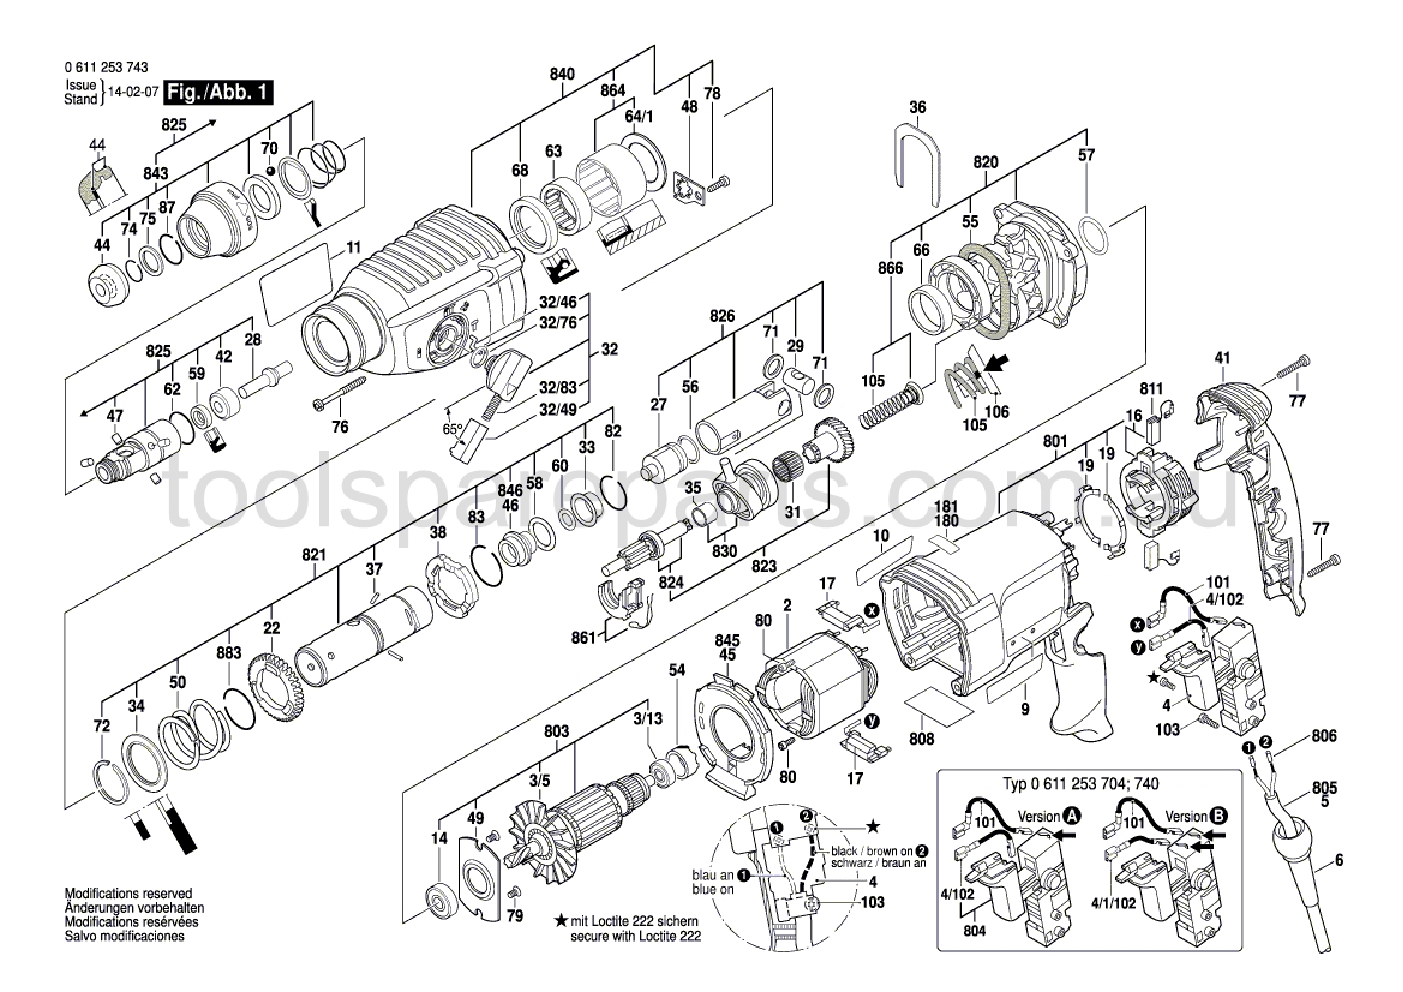 Bosch GBH 2-26 DRE 0611253737  Diagram 1